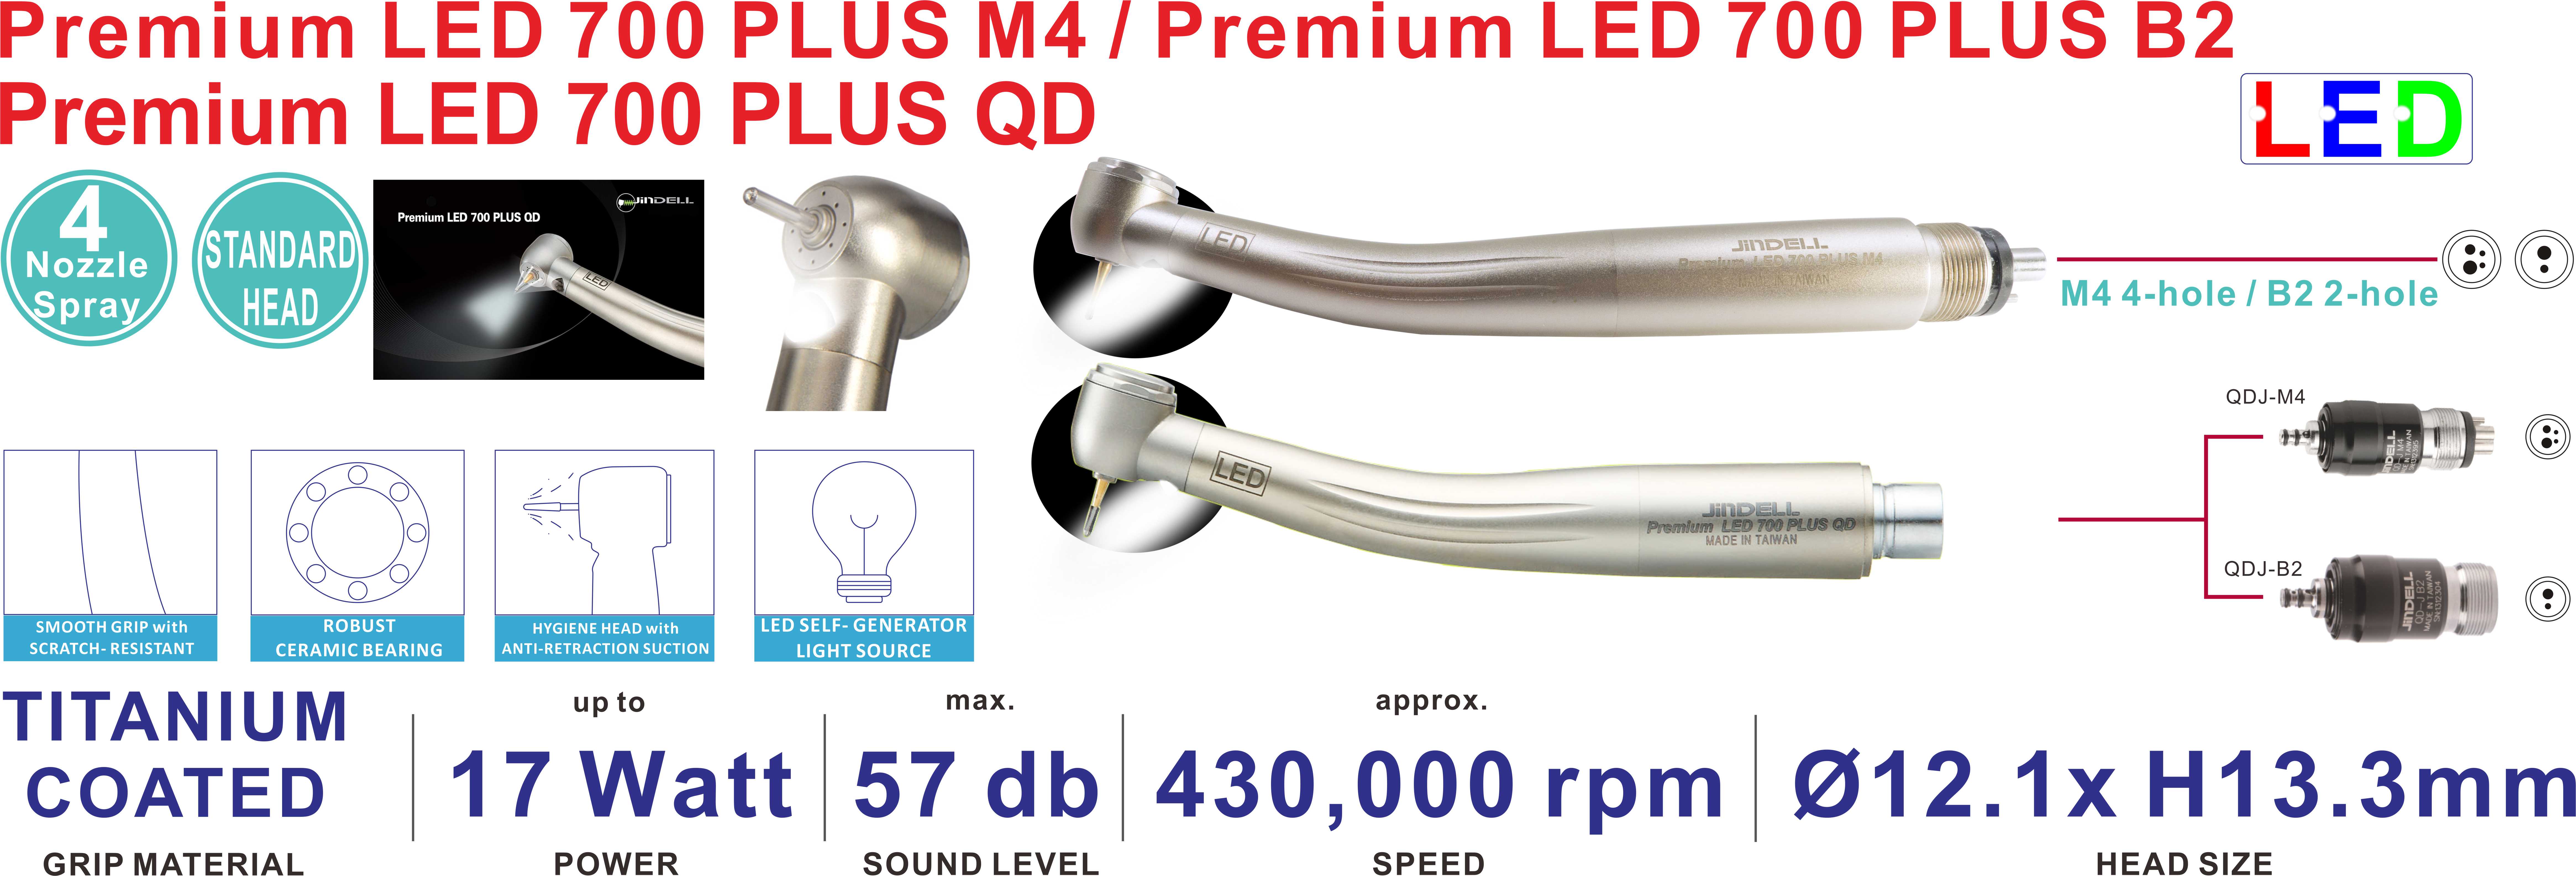 Premium LED 700 PLUS series Turbine Handpiece